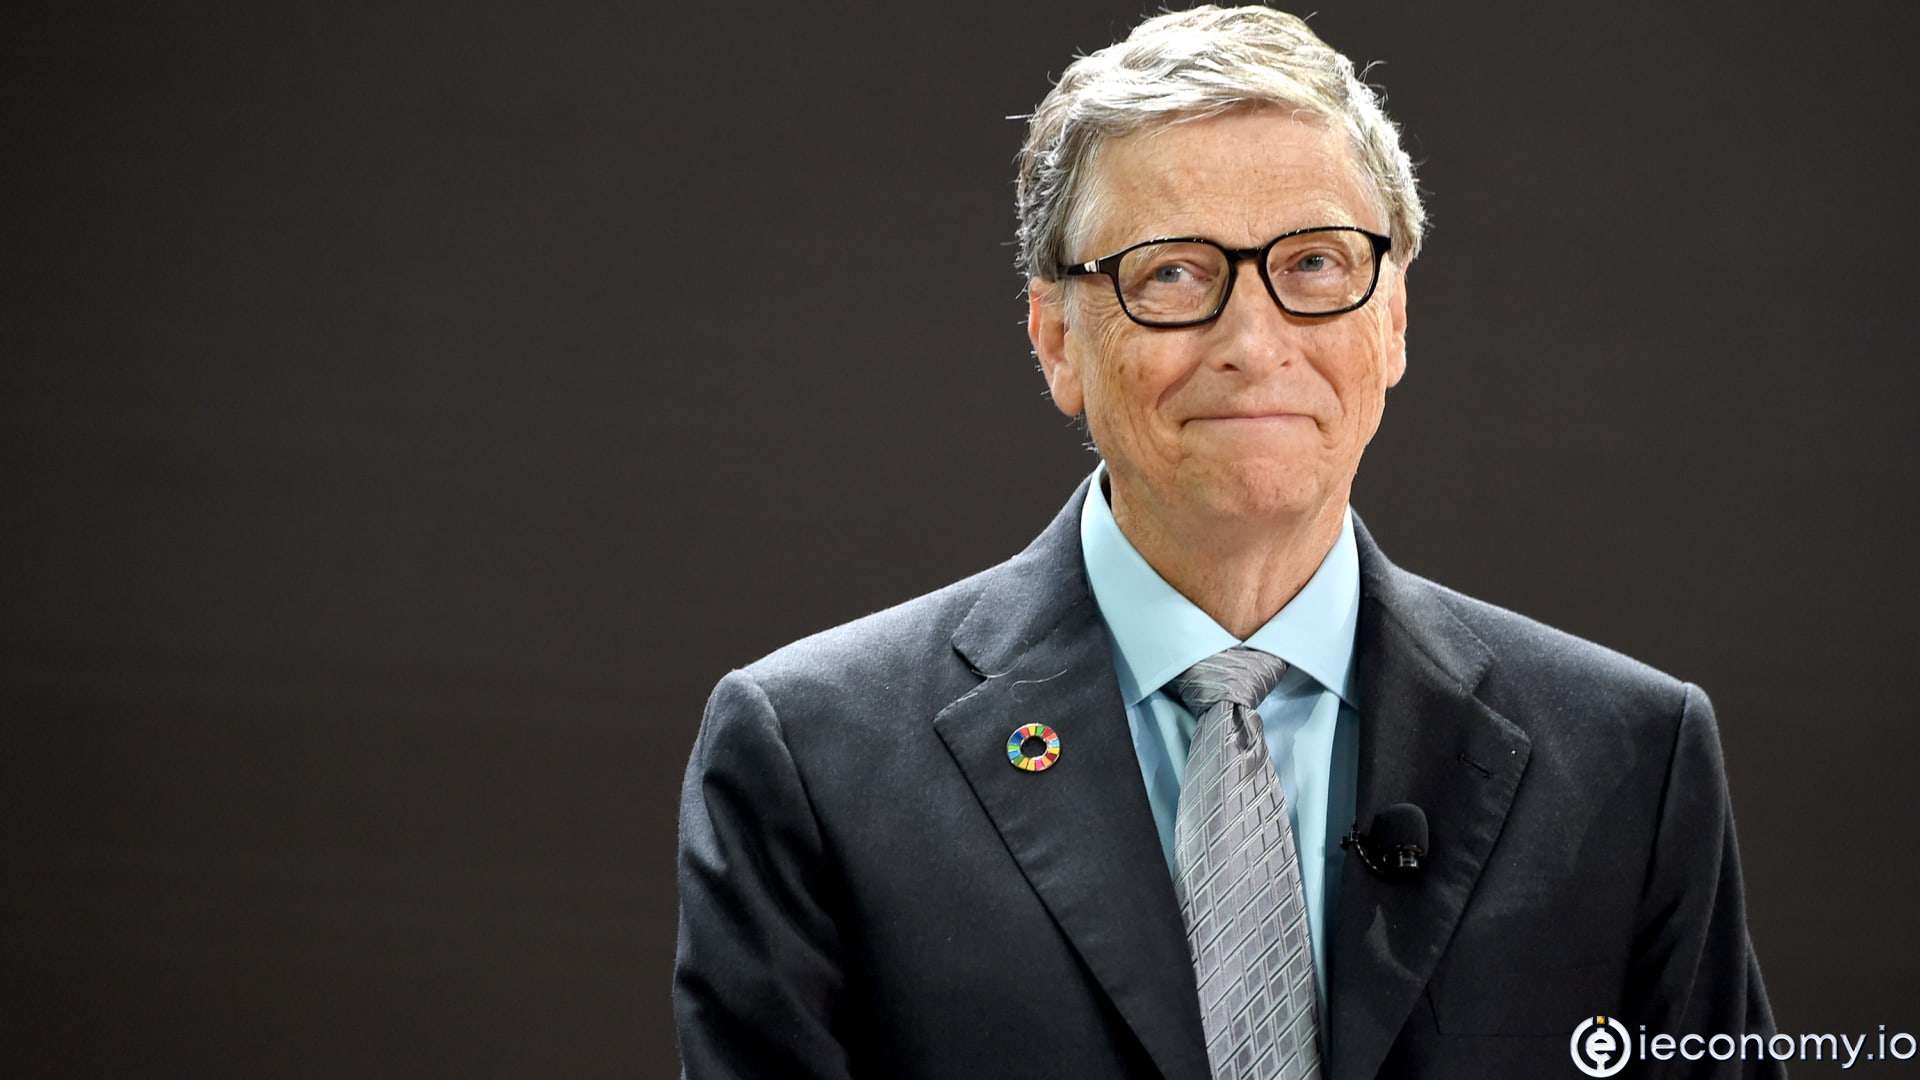 Bill Gates Caught Coronavirus